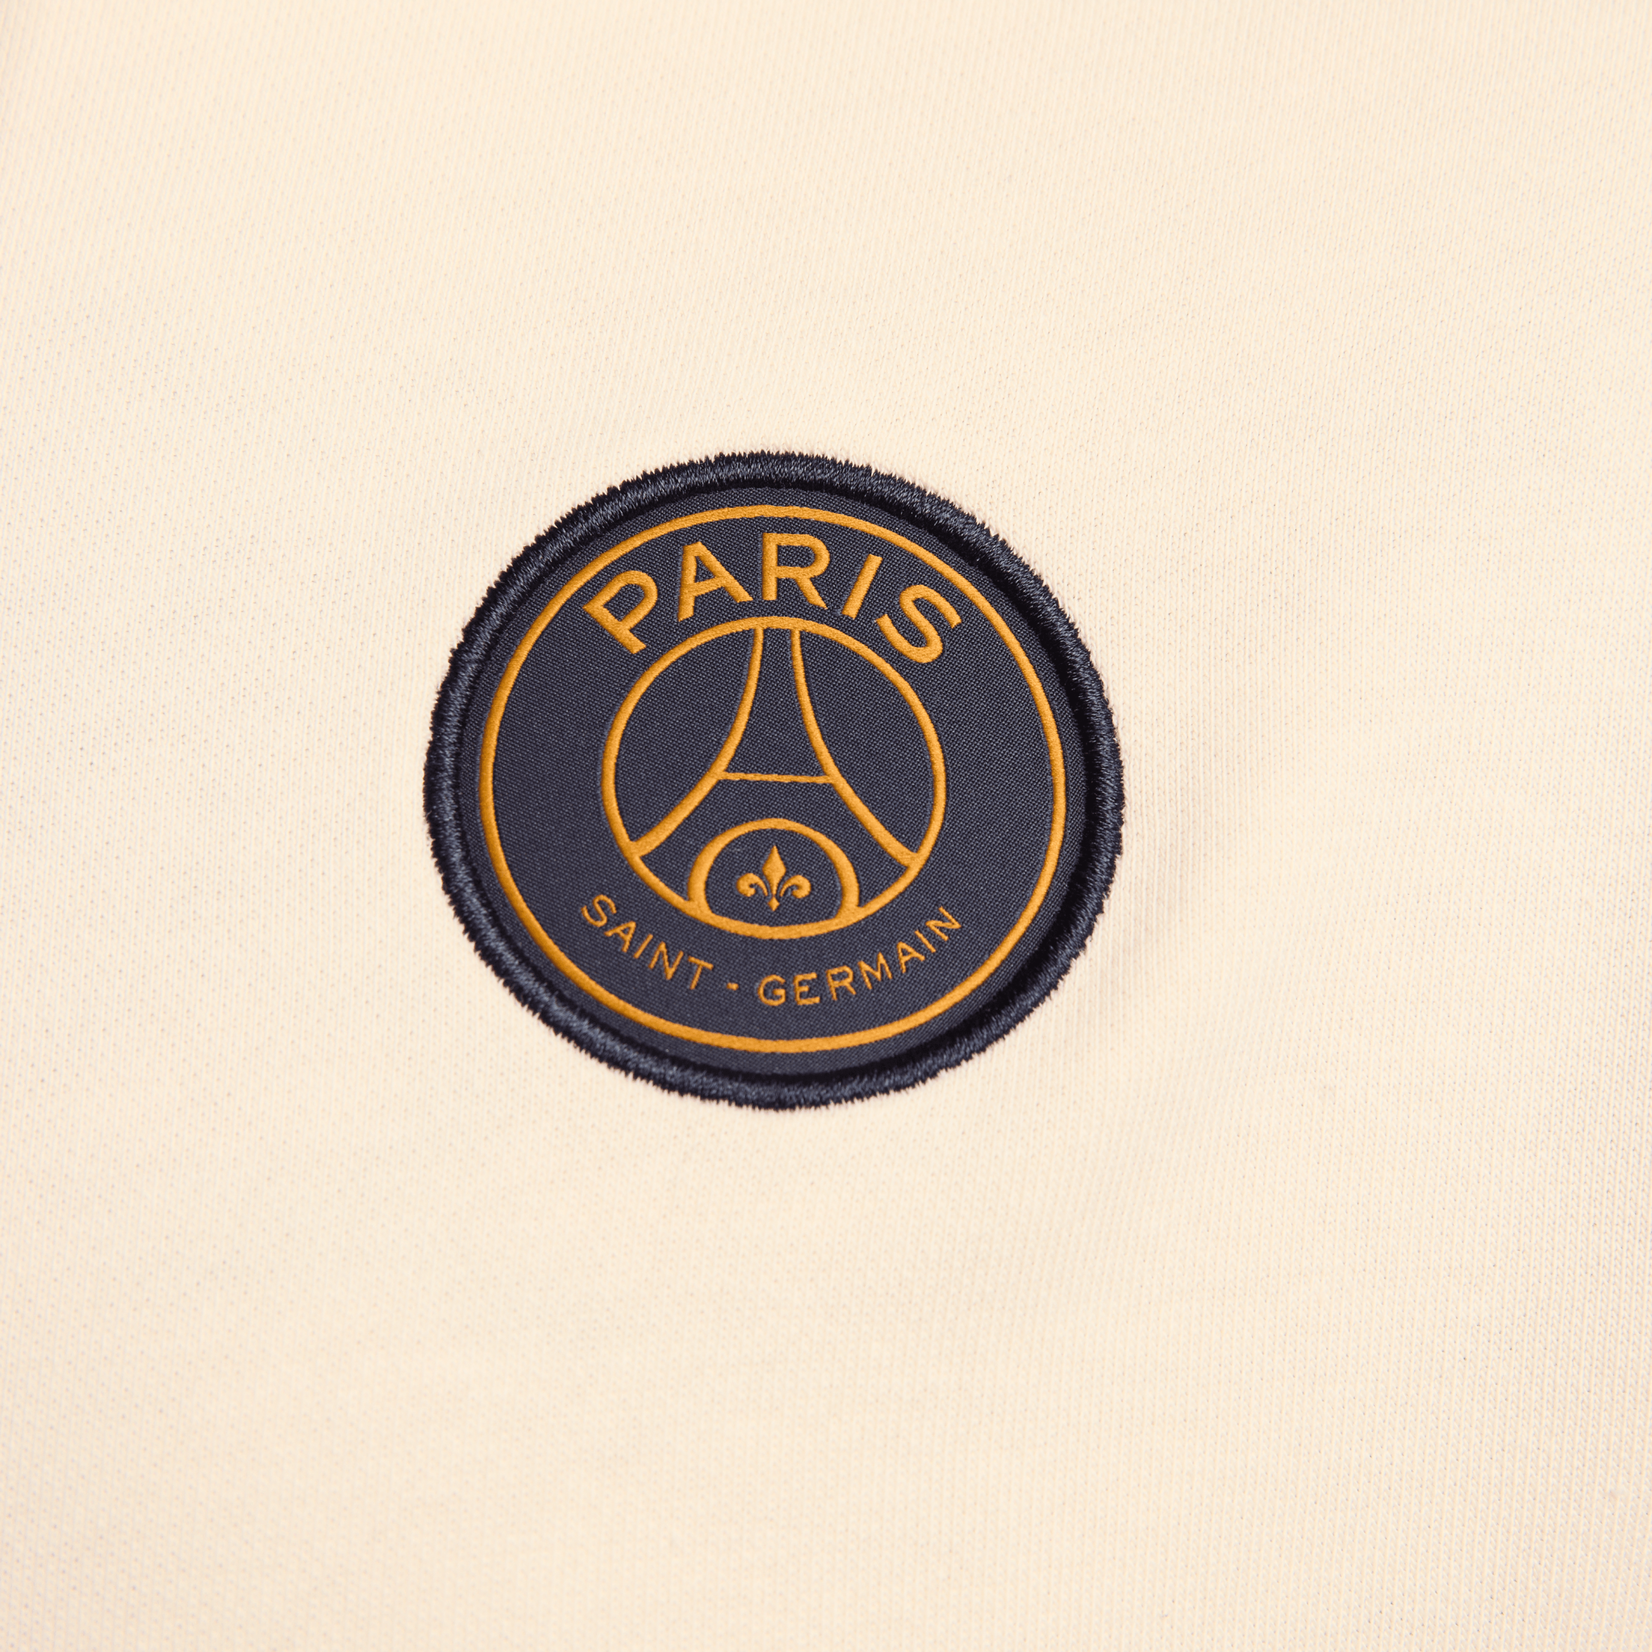 Nike Paris Saint-Germain Club Fleece Hoodie Coconut Milk